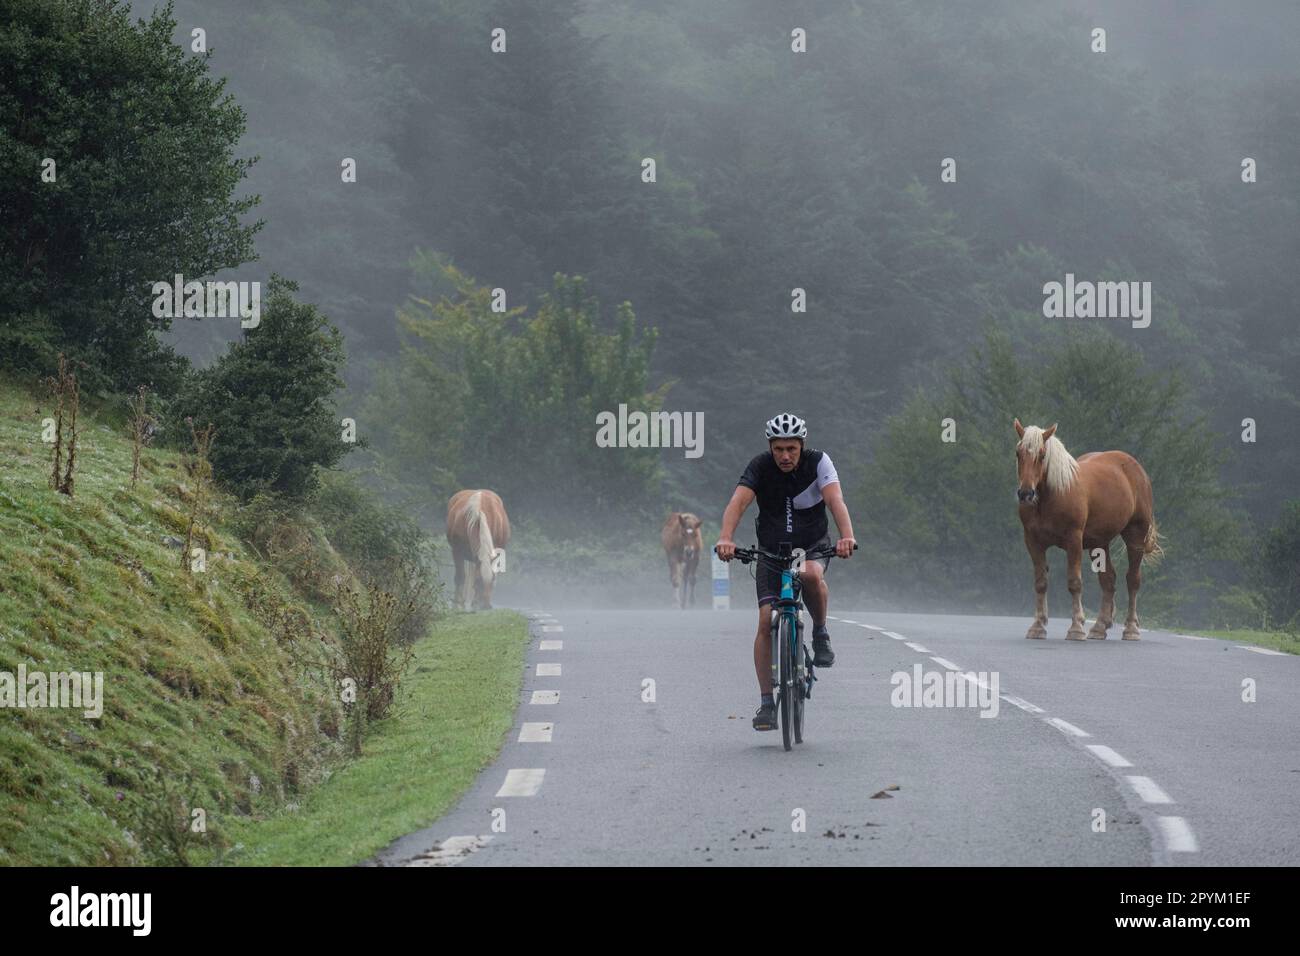 ciclista entre un rebaño de caballos, carretera Isaba-Francia, valle de Belagua, Isaba, Navarra, Spain, Europe Stock Photo